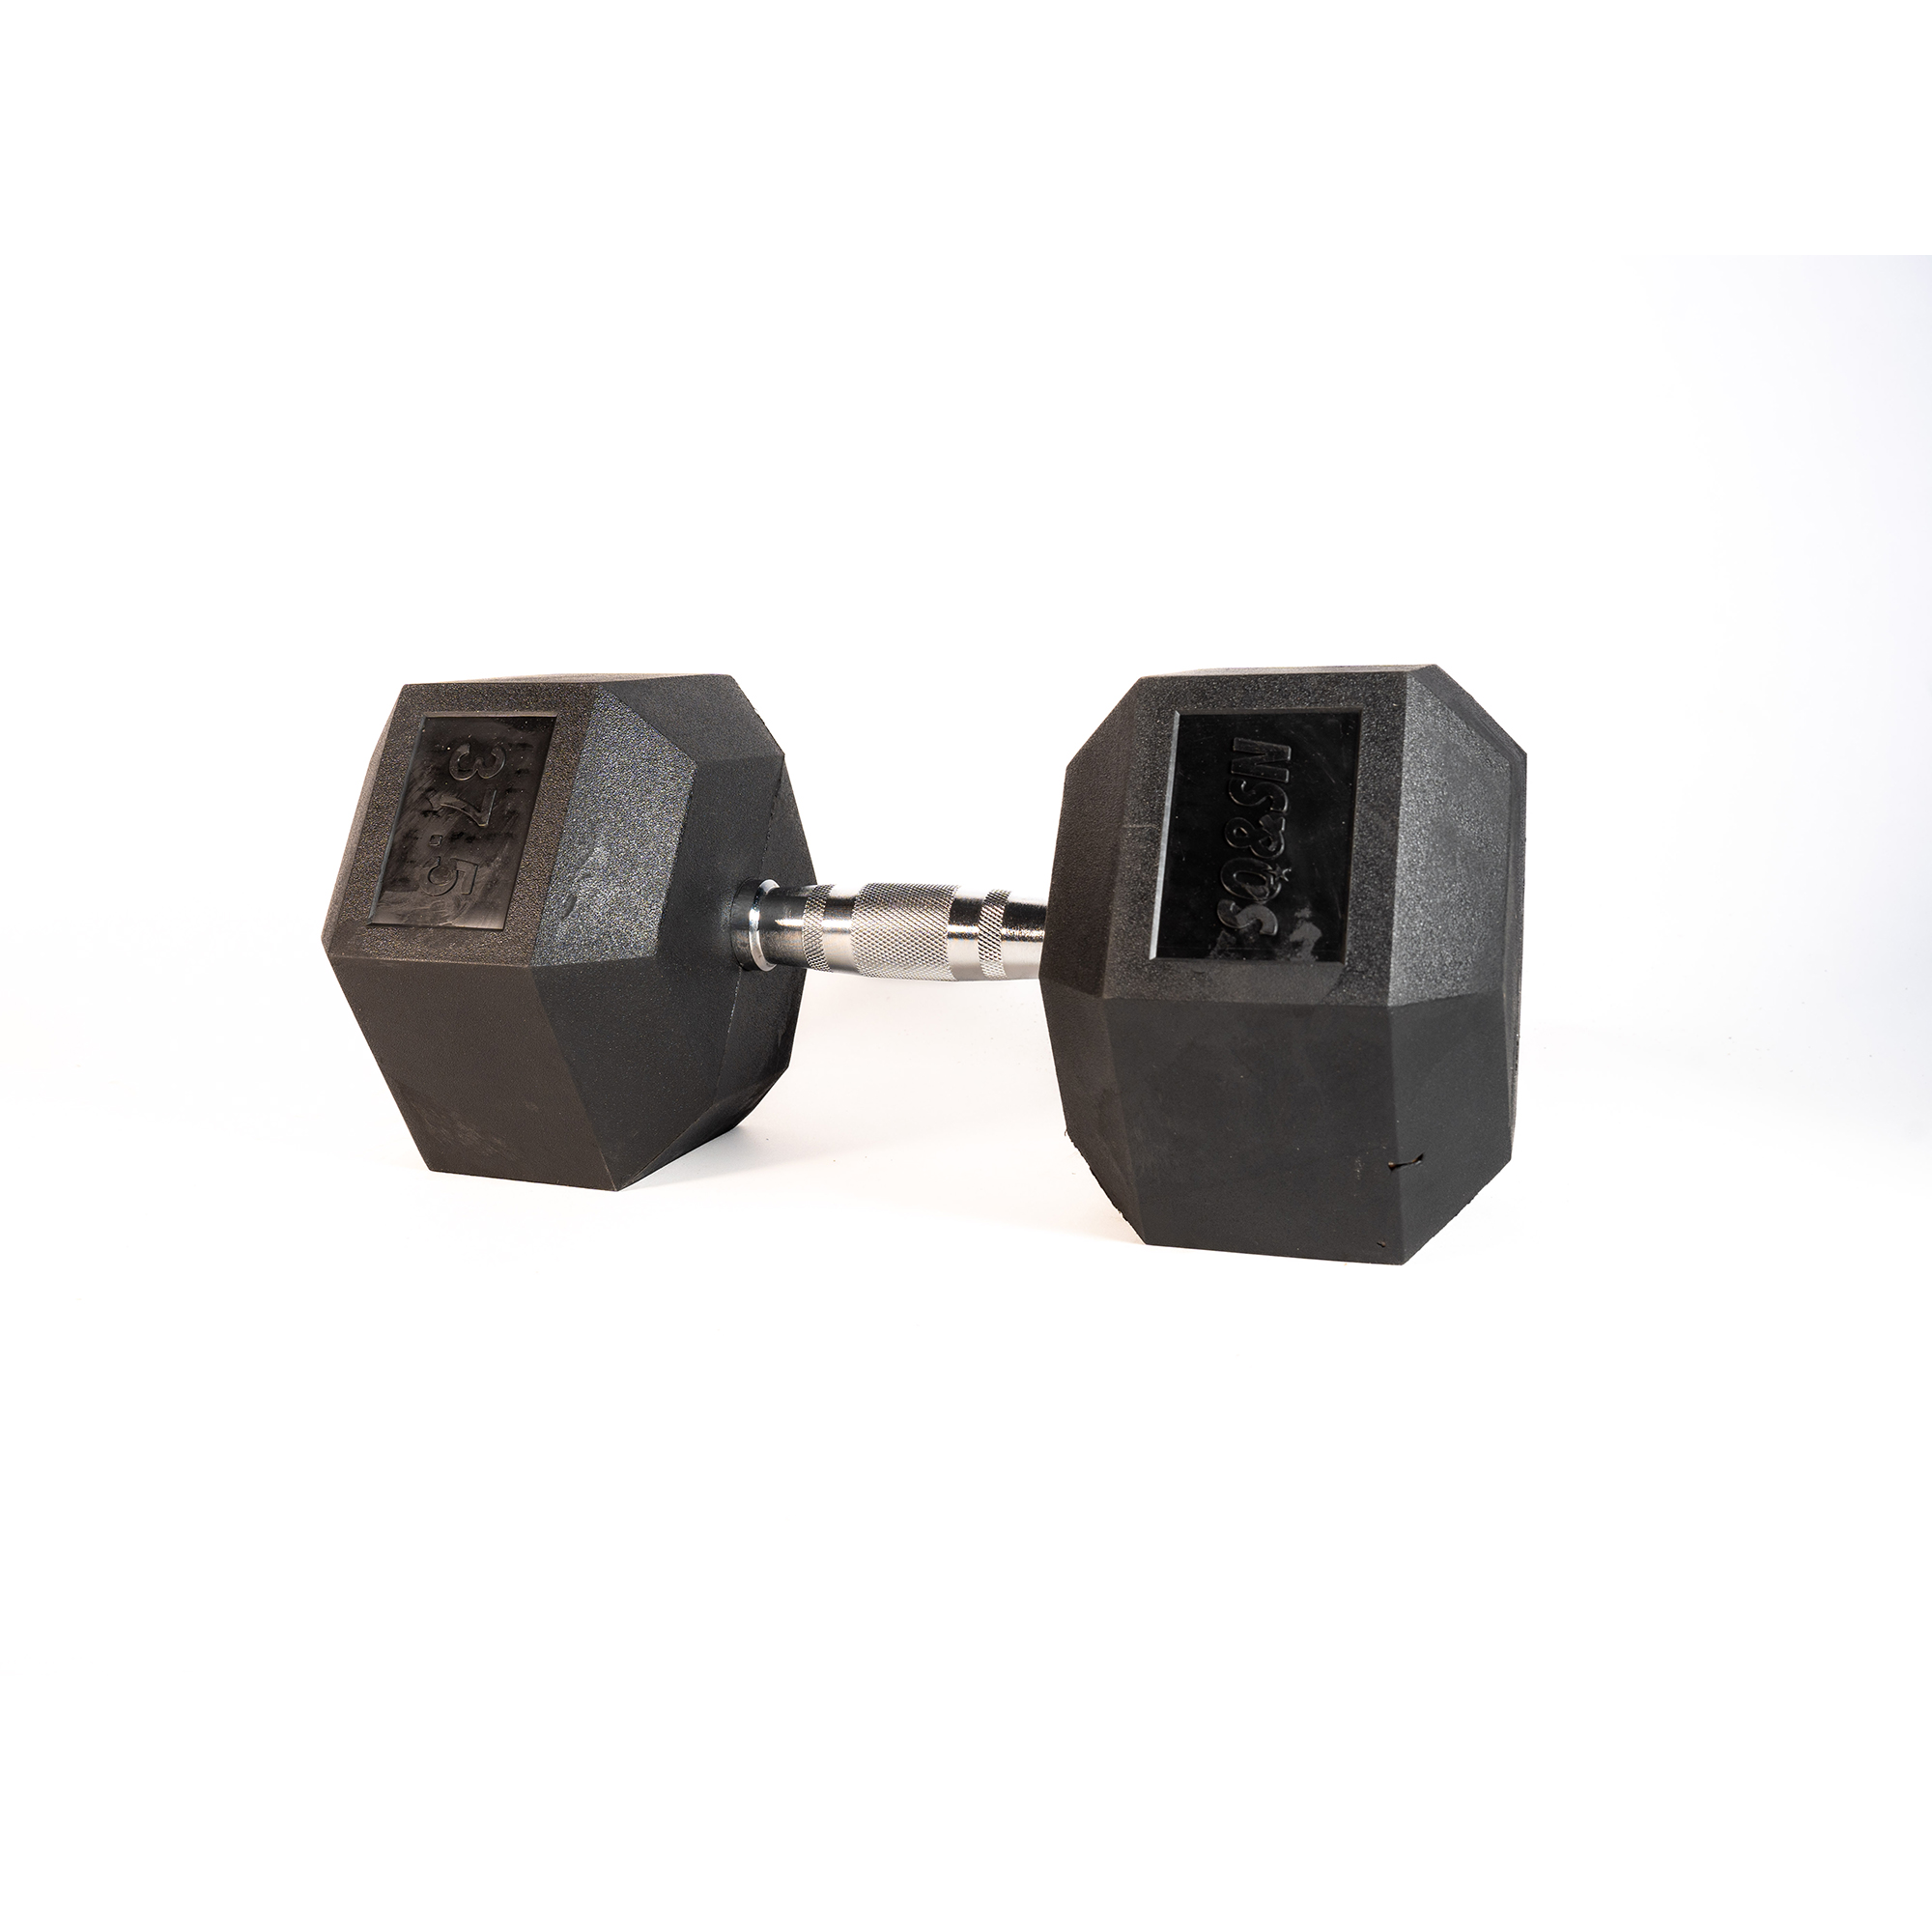 SQ&SN Hexagon Håndvægt (37,5 kg) med forkromet greb. Udstyr til crossfit træning, styrketræning og funktionel træning thumbnail